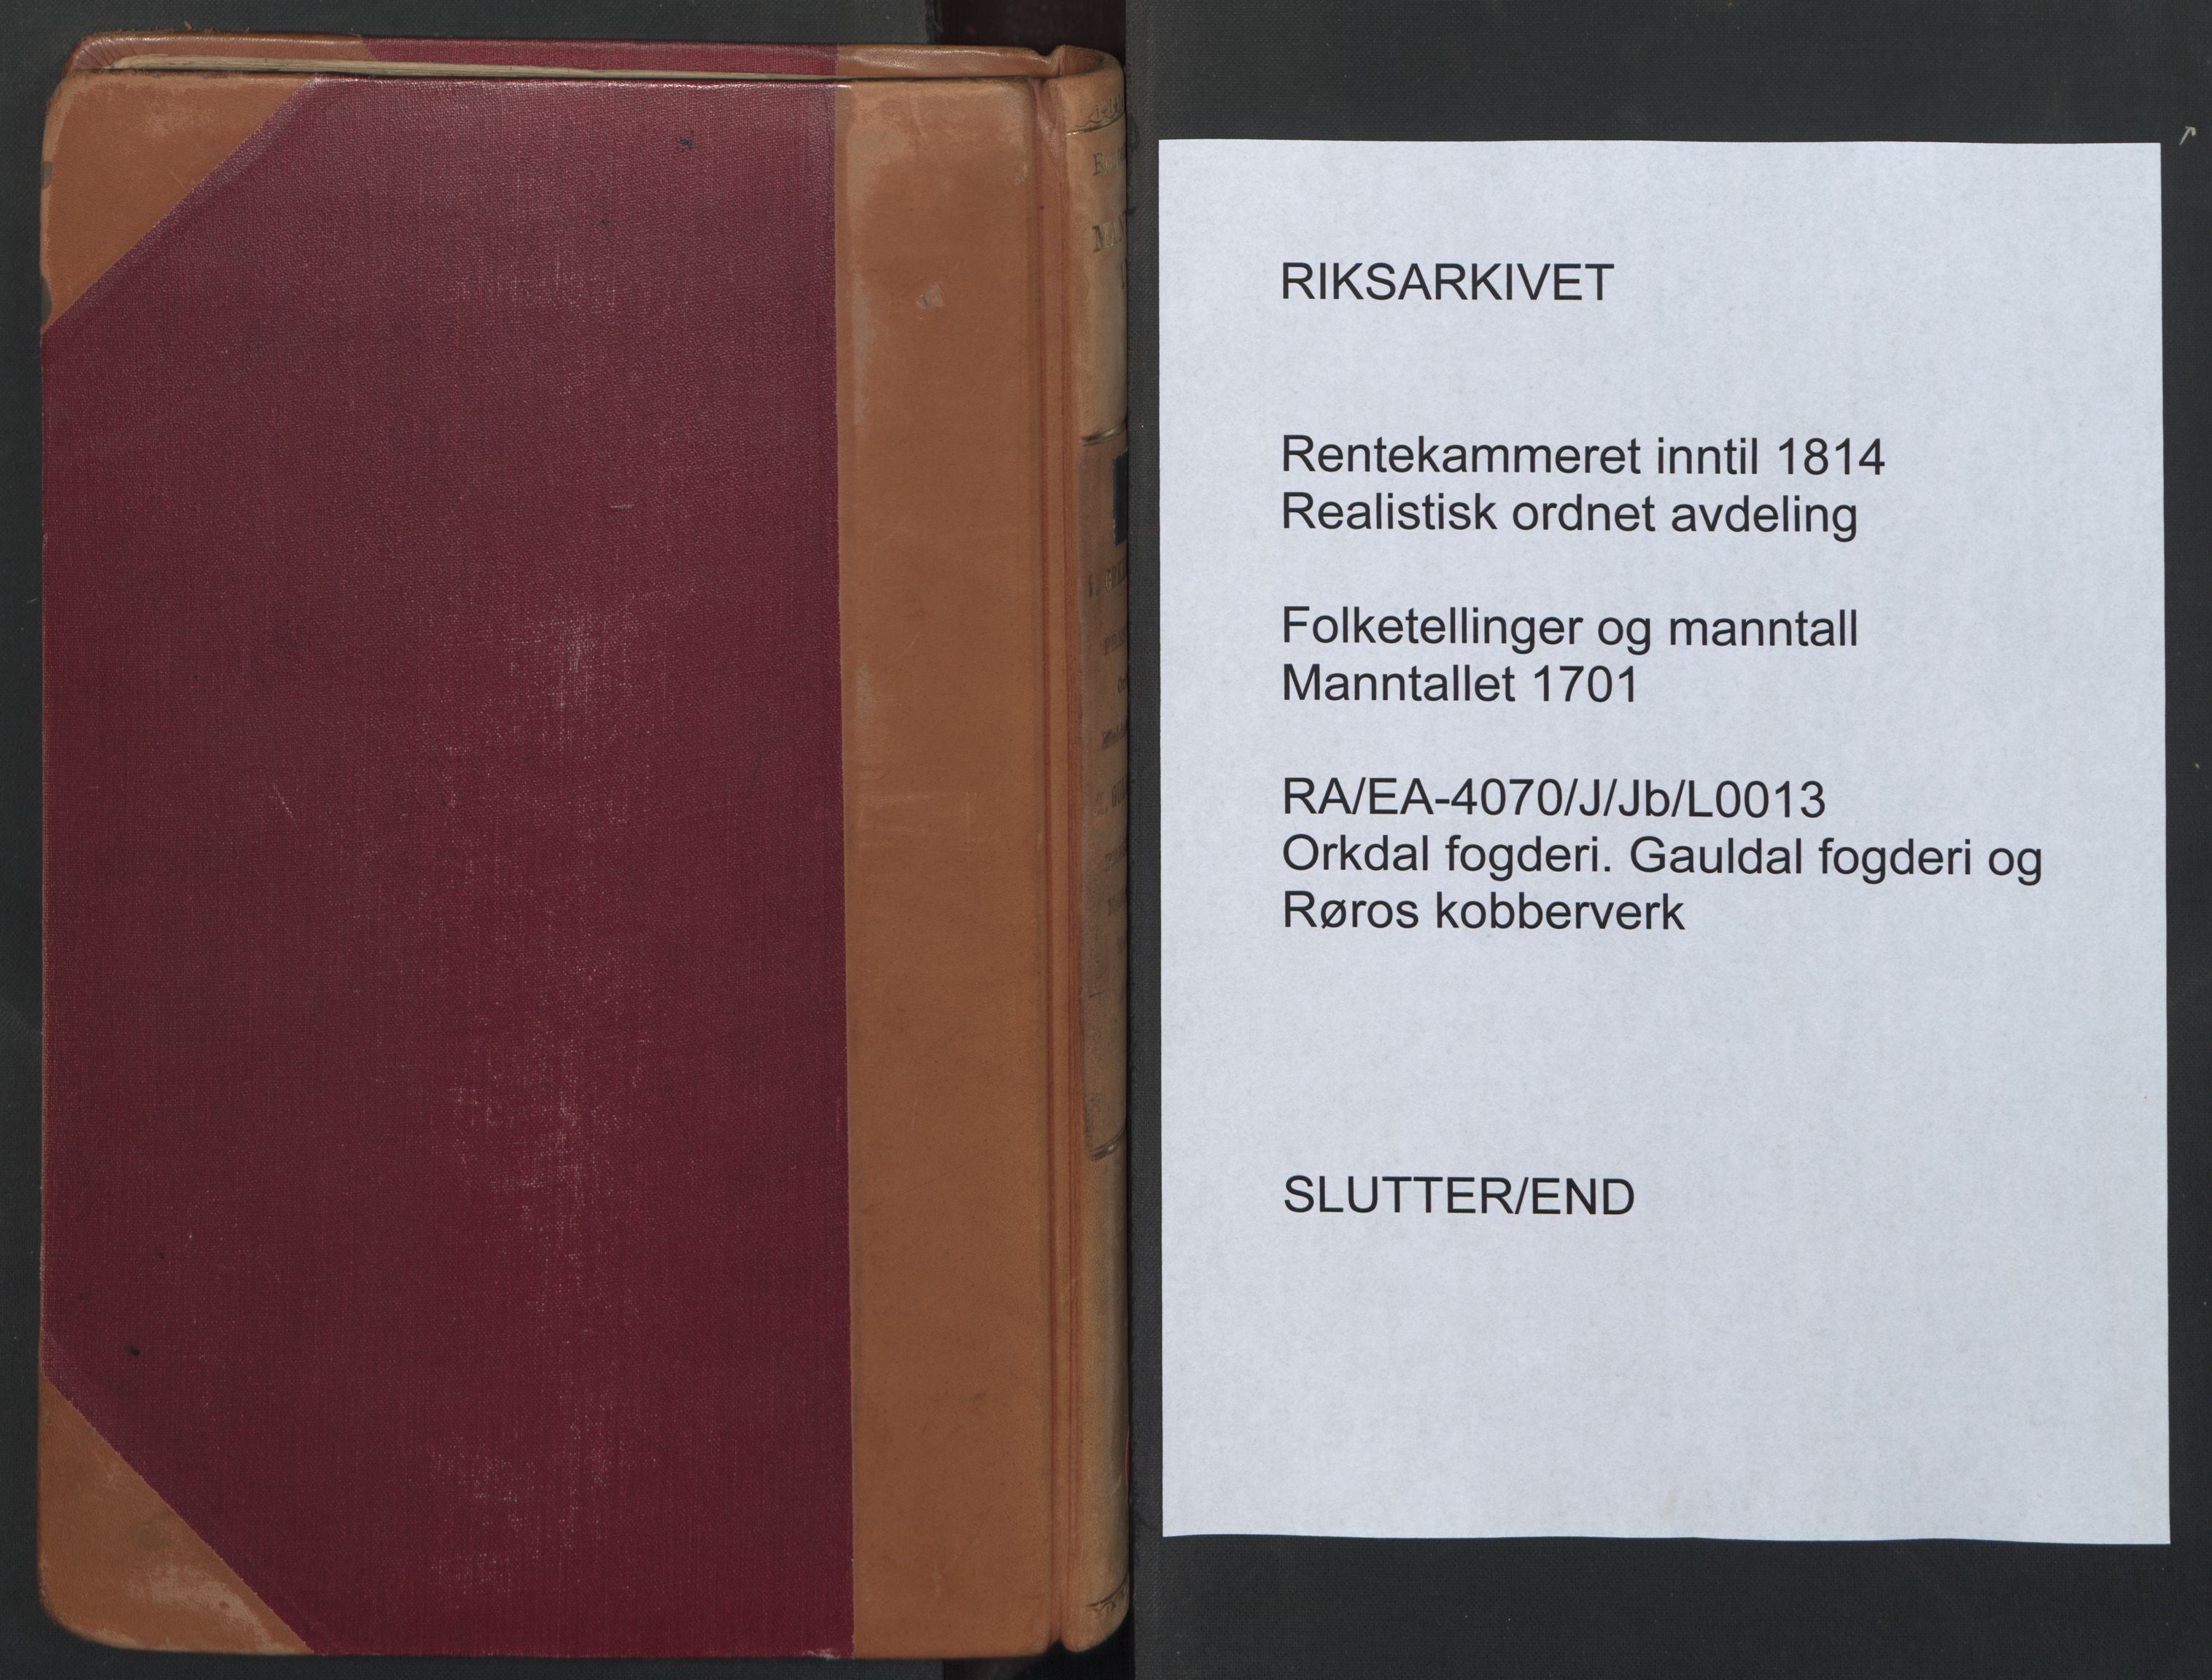 RA, Census (manntall) 1701, no. 13: Orkdal fogderi and Gauldal fogderi including Røros kobberverk, 1701